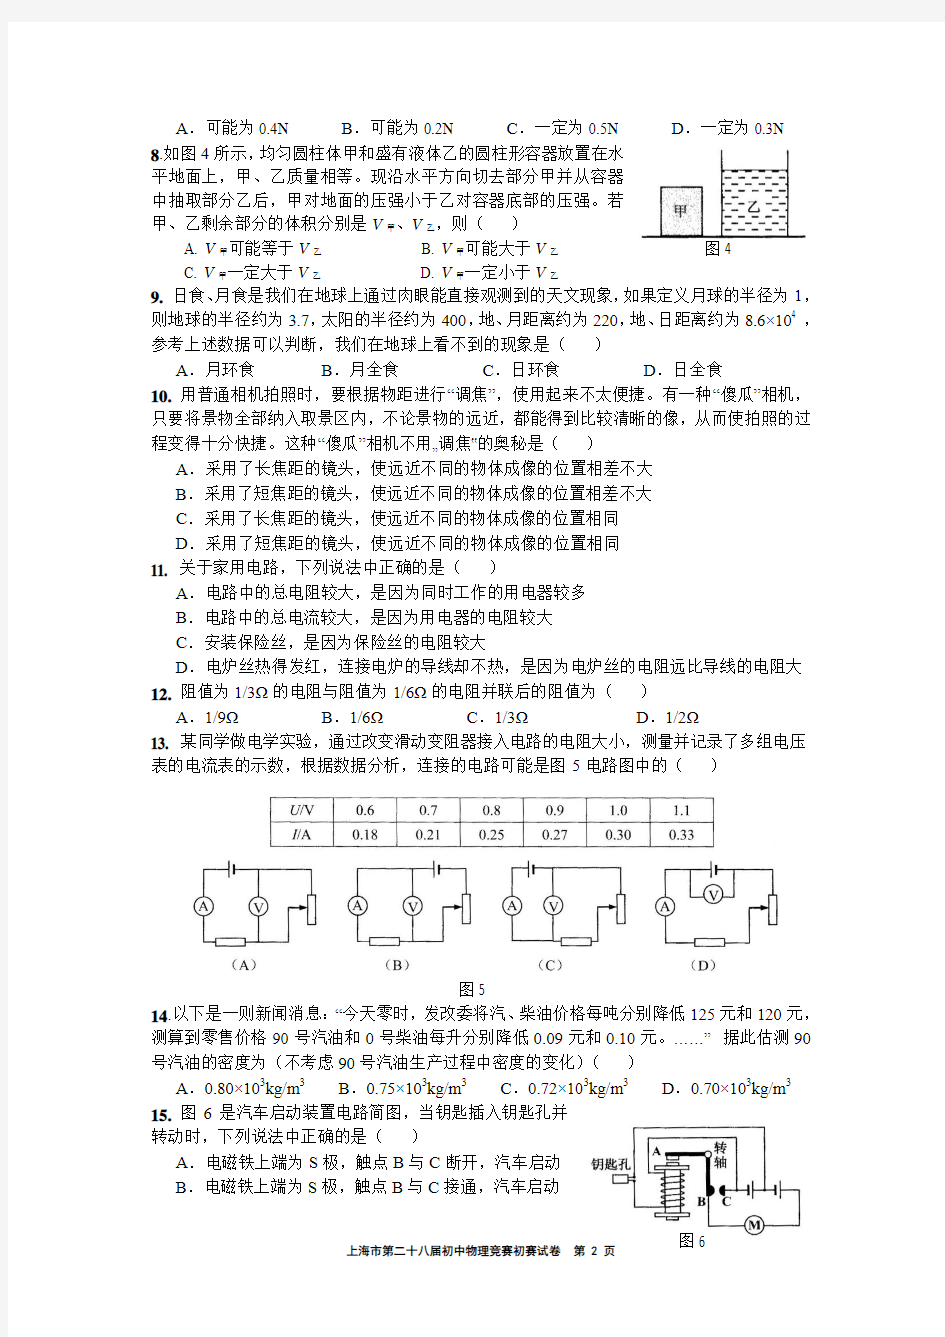 2014年上海大同杯物理竞赛初赛试卷(含答案)